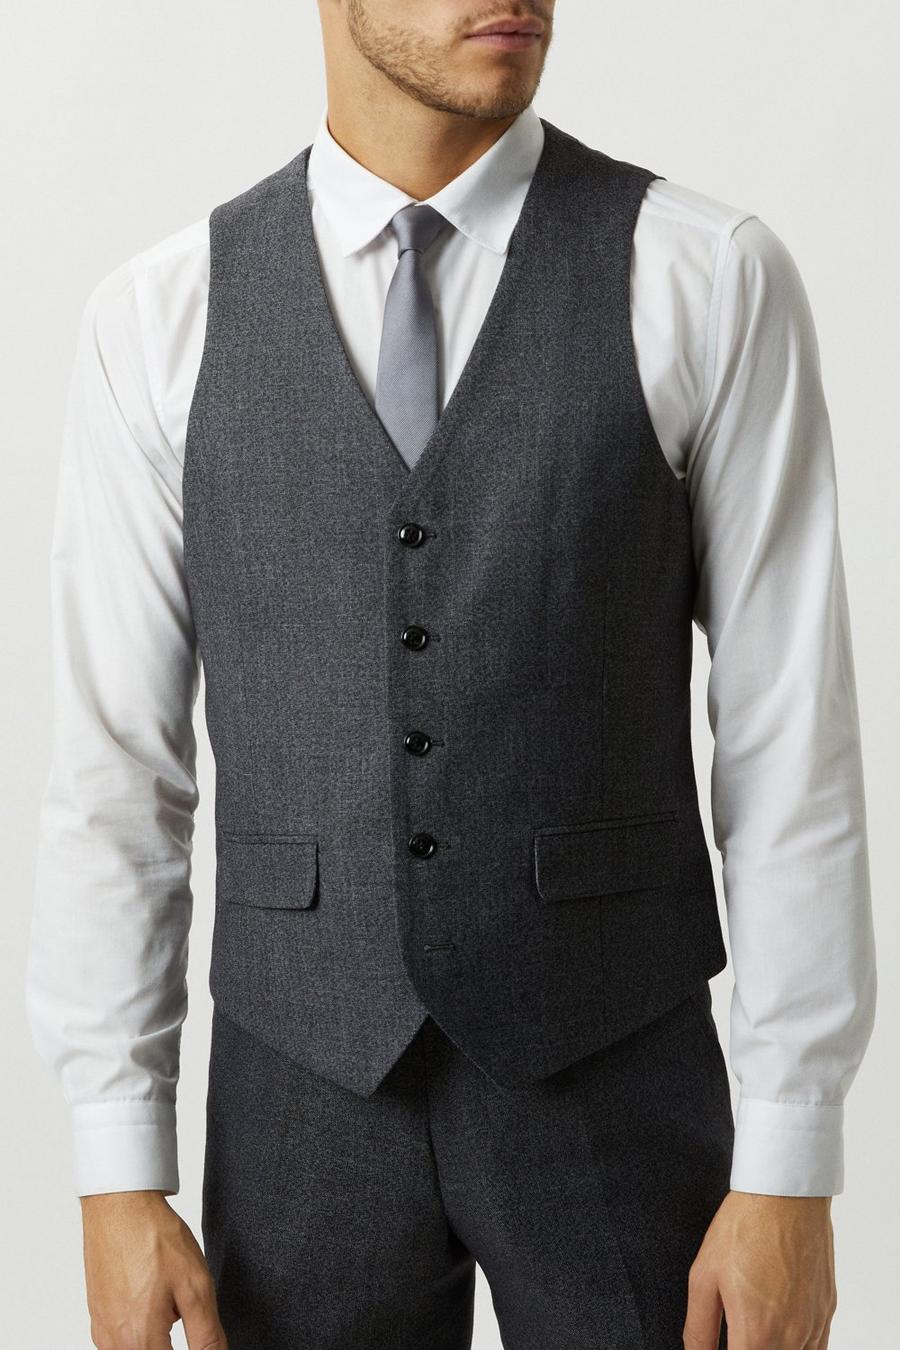 Men's Waistcoats | Black & Tweed Waistcoats | Burton UK